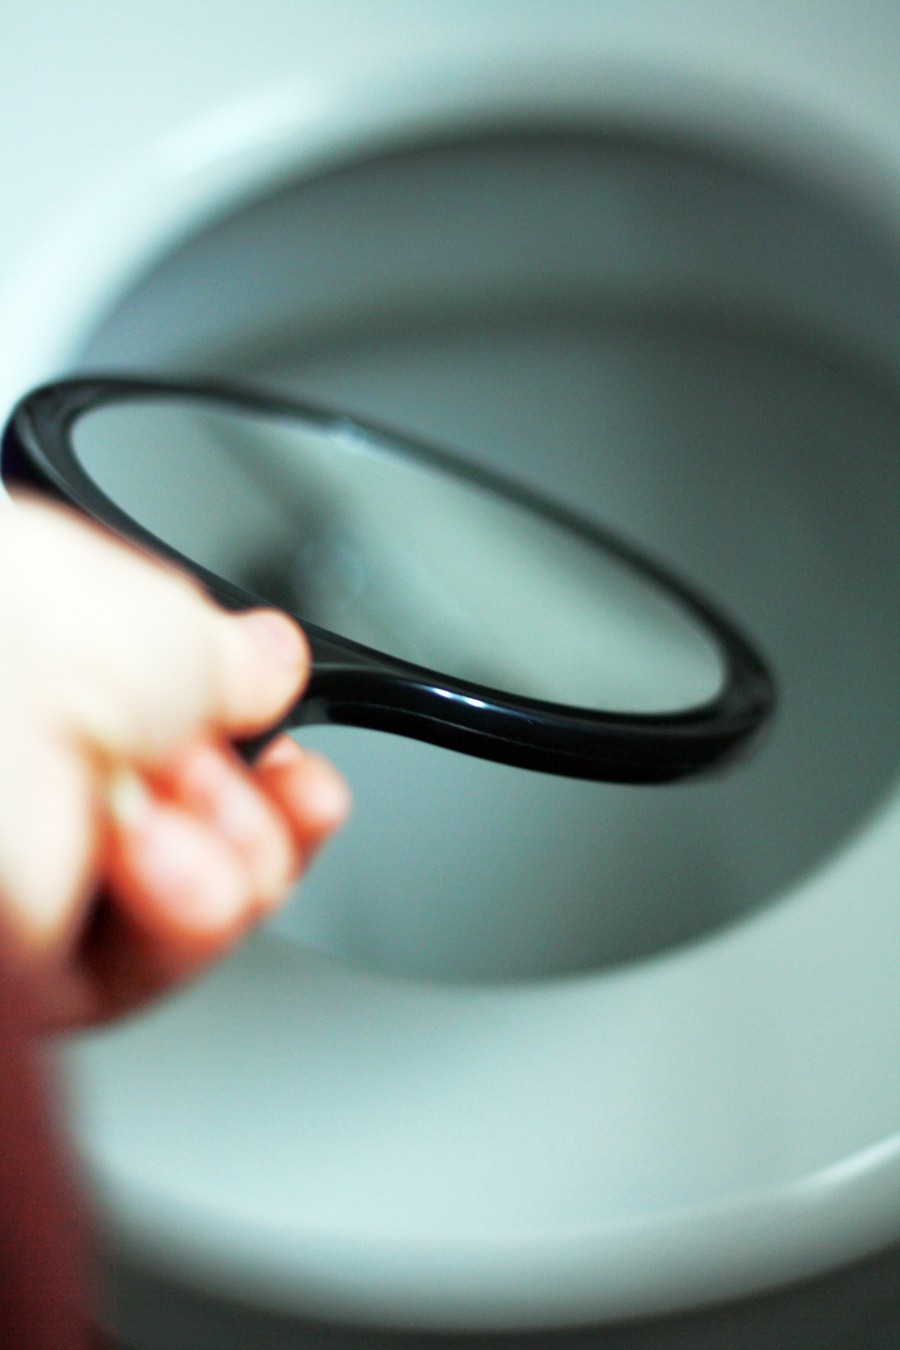 WC reinigen: Für eine gezielte Grundreinigung einfach einen kleinen Handspiegel unter den Rand halten, schon kann man sehen, wo ein gründliches Schrubben nötig ist. 